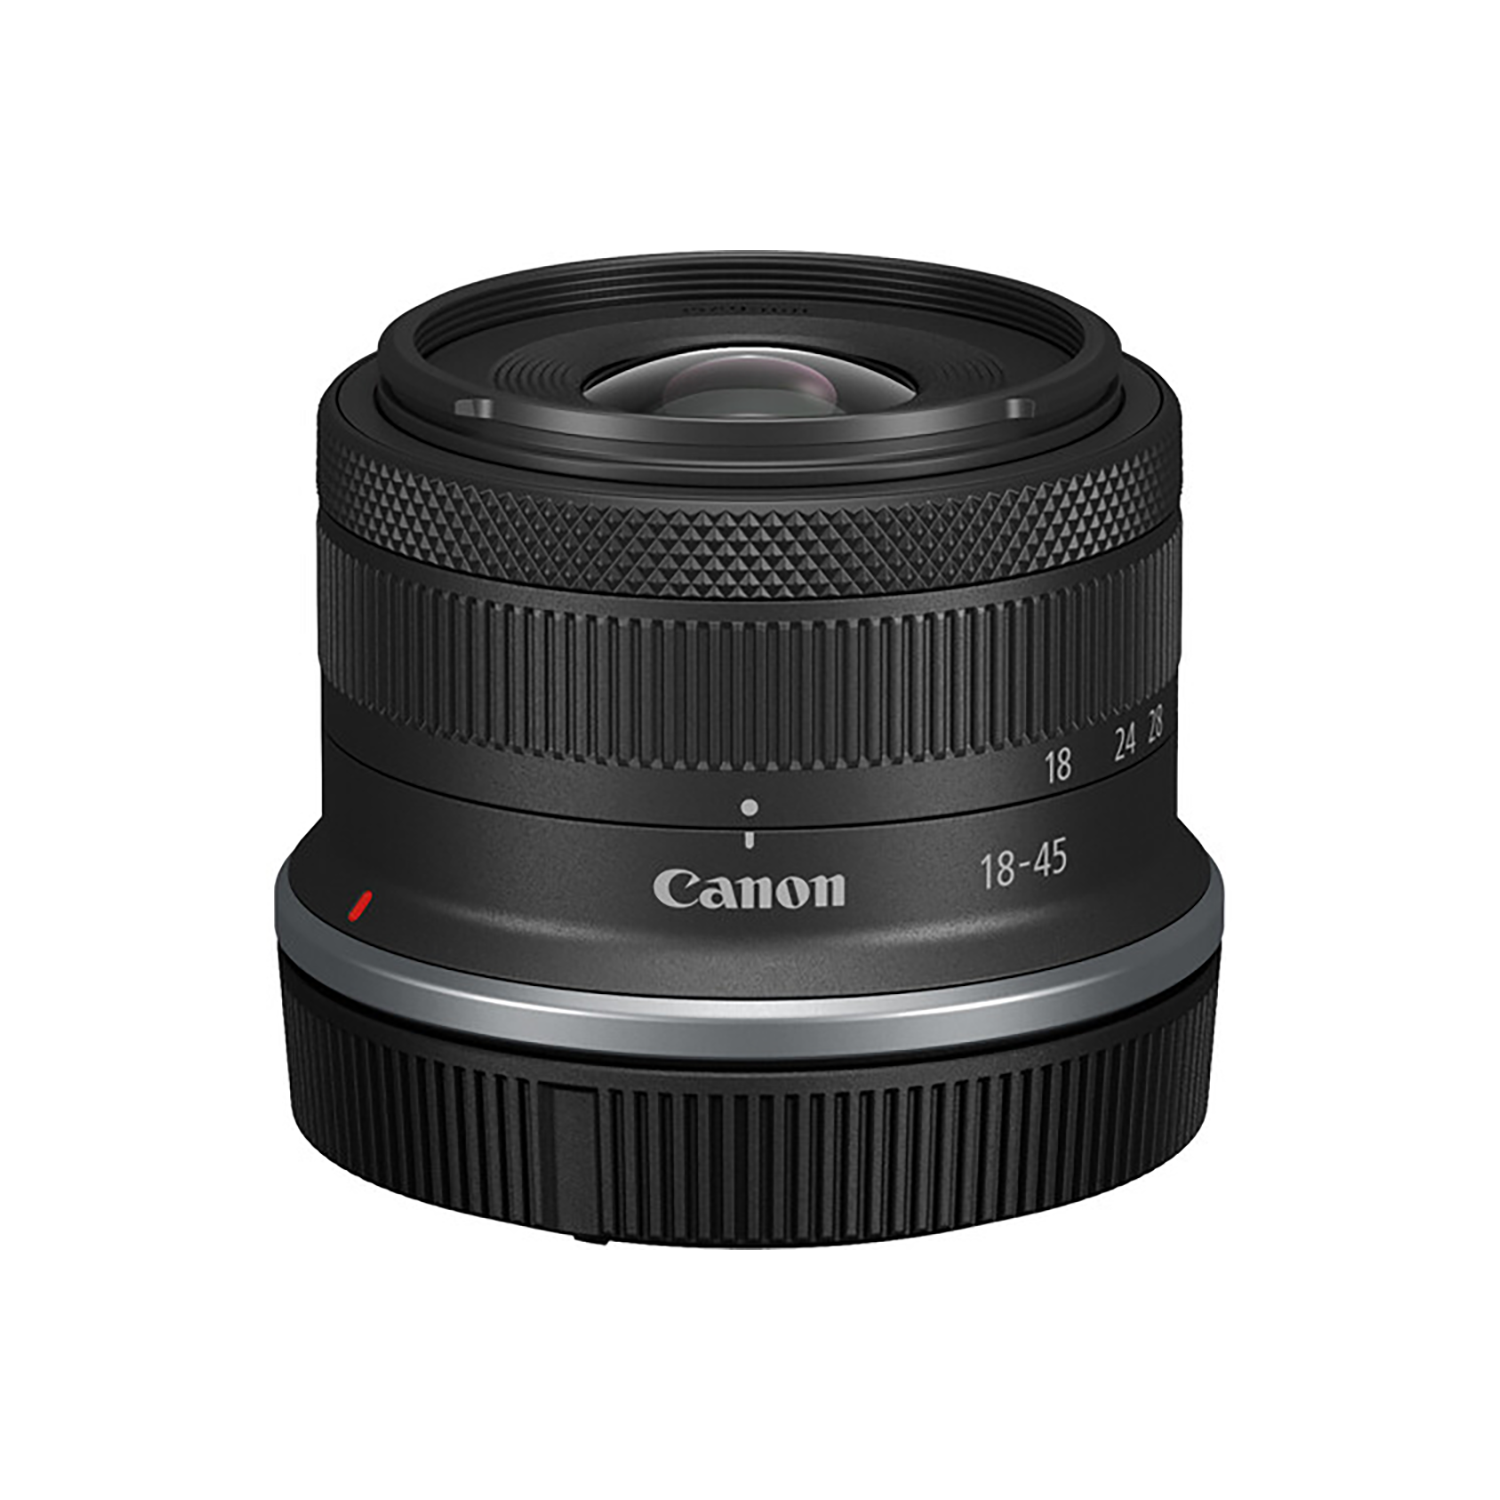 Canon RF-S 18-45mm f/4.5-6.3 IS STM Lens 4858C002 013803342192